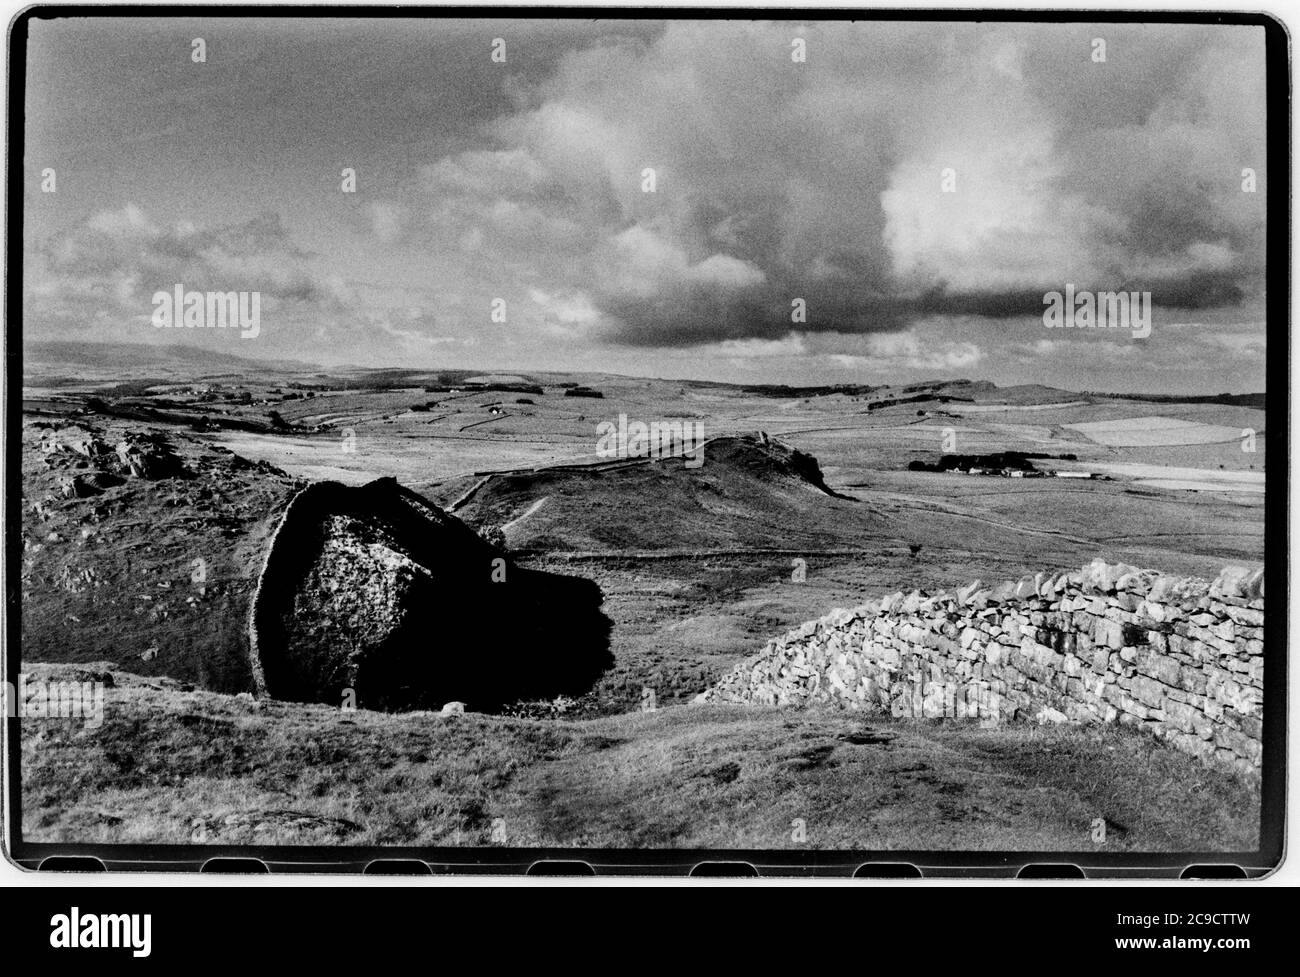 Hadrian Wall Northumberland England UK 1990 Hadrian's Wall (Latein: , Vallum Aelium), auch bekannt als die römische Mauer, Picts' Wall, Oder Vallum Hadriani in Latein, ist eine ehemalige defensive Befestigung der römischen Provinz Britannia, begonnen in AD 122 in der Regierungszeit des Kaisers Hadrian.[3] Es lief von den Ufern des Flusses Tyne in der Nähe der Nordsee zum Solway Firth auf der Irischen See, Und war die nördliche Grenze des Römischen Reiches, unmittelbar nördlich davon waren die Länder der nördlichen Alten Briten, einschließlich der Picts. Es hatte einen Steinsockel und eine Steinmauer. Es gab Milecastles mit zwei Stockfoto